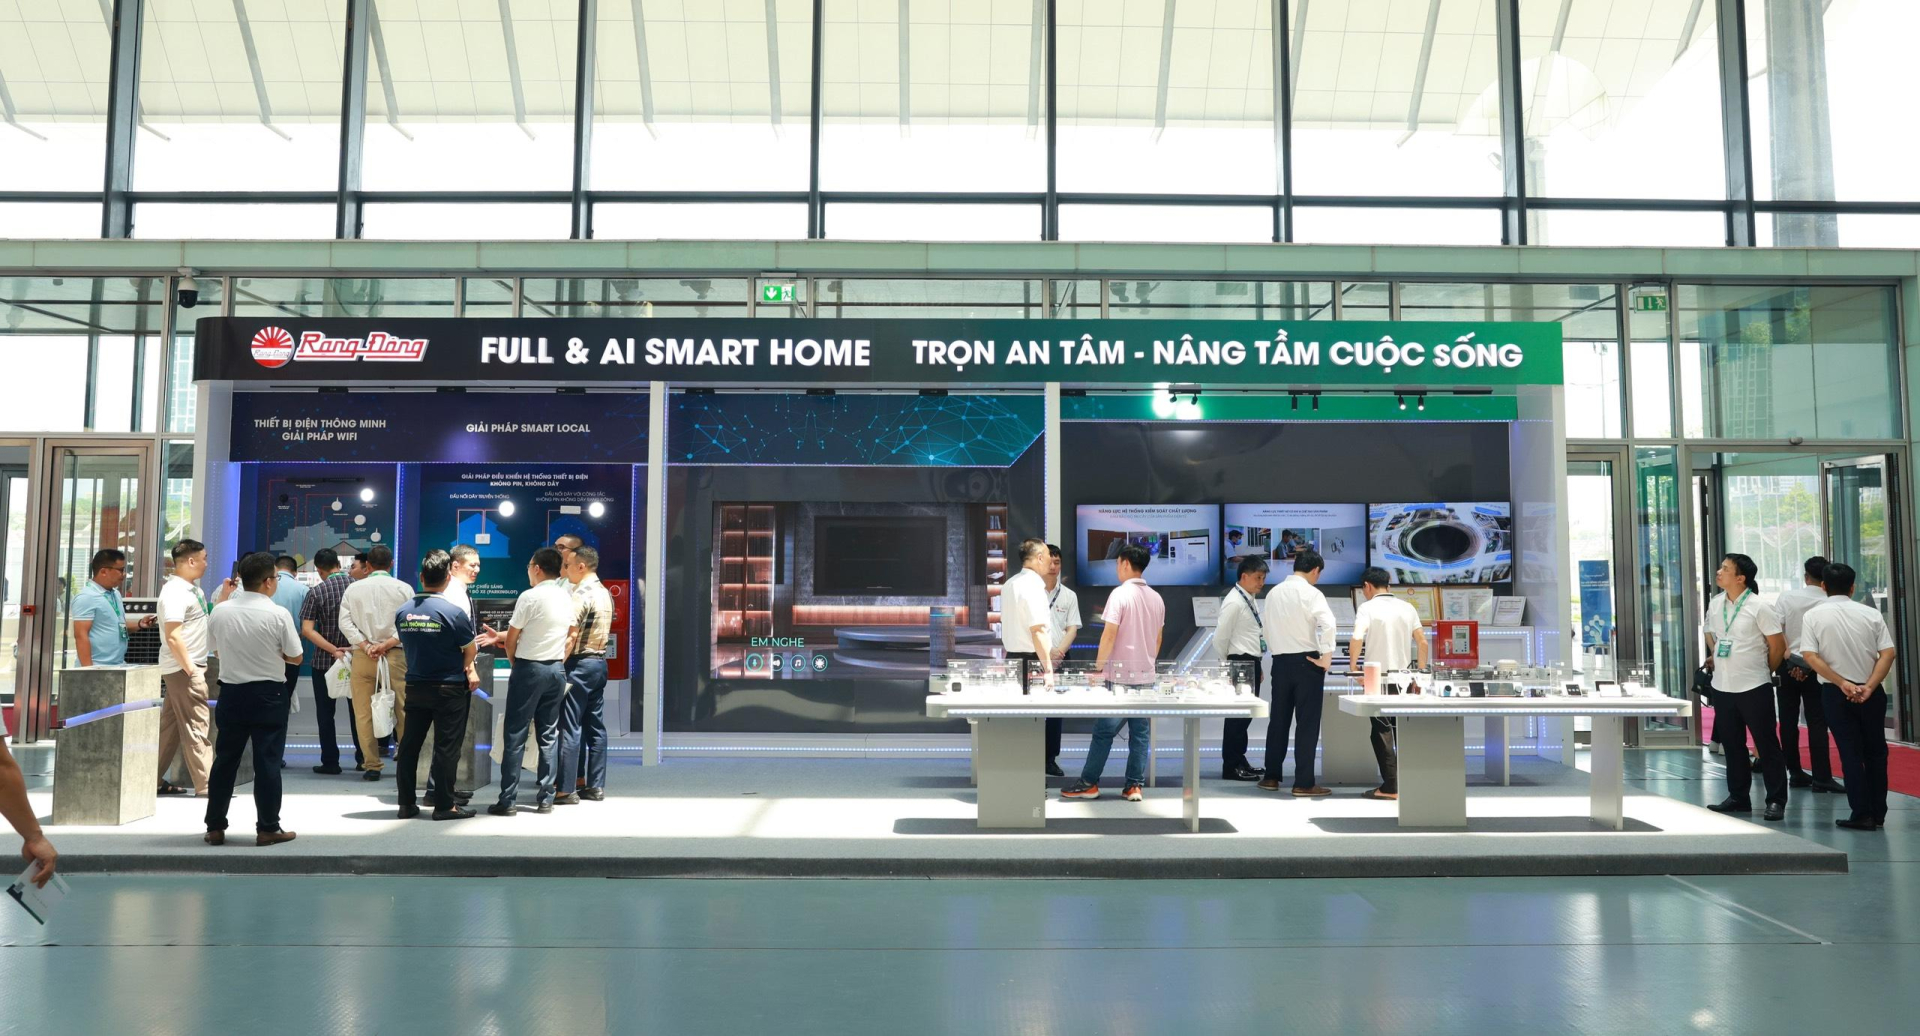 Giải pháp, sản phẩm Smart Home Rạng Đông tại triển lãm trưng bày.